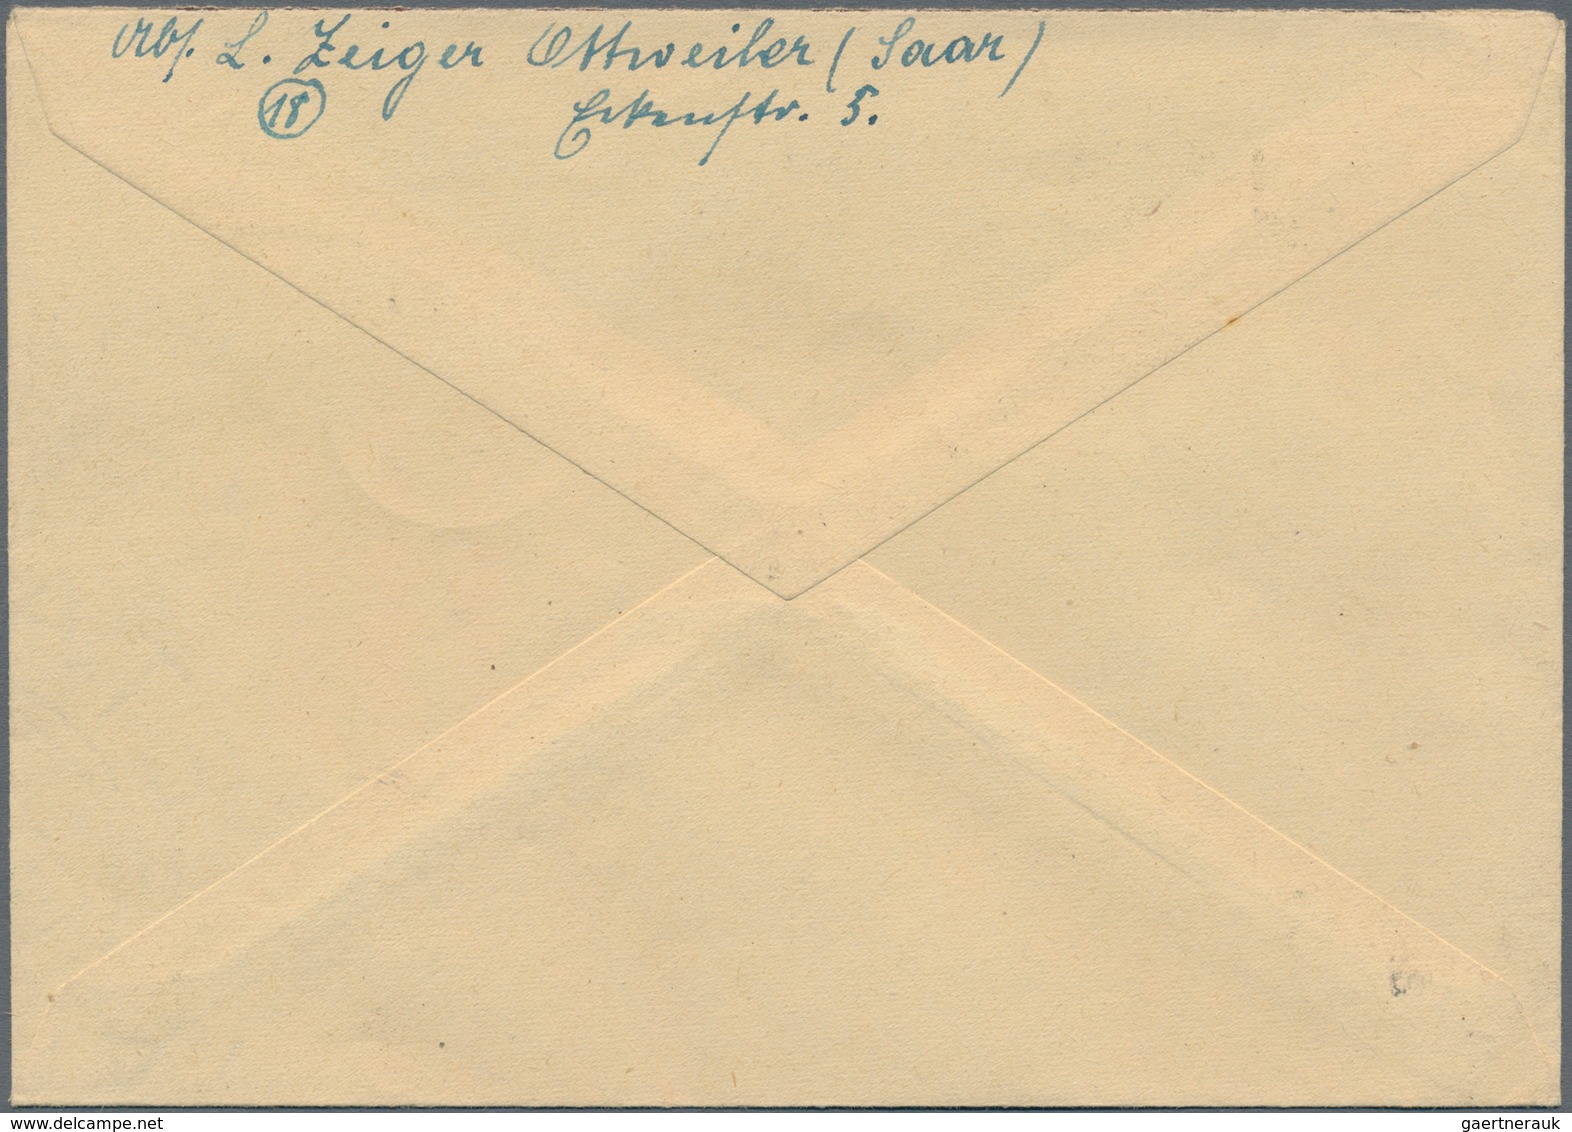 Saarland (1947/56): 1947, Urdruck 2 F Auf 12 Pf Ungezähntes Paar Mit Gezähnter Einzelmarke Auf Brief - Neufs